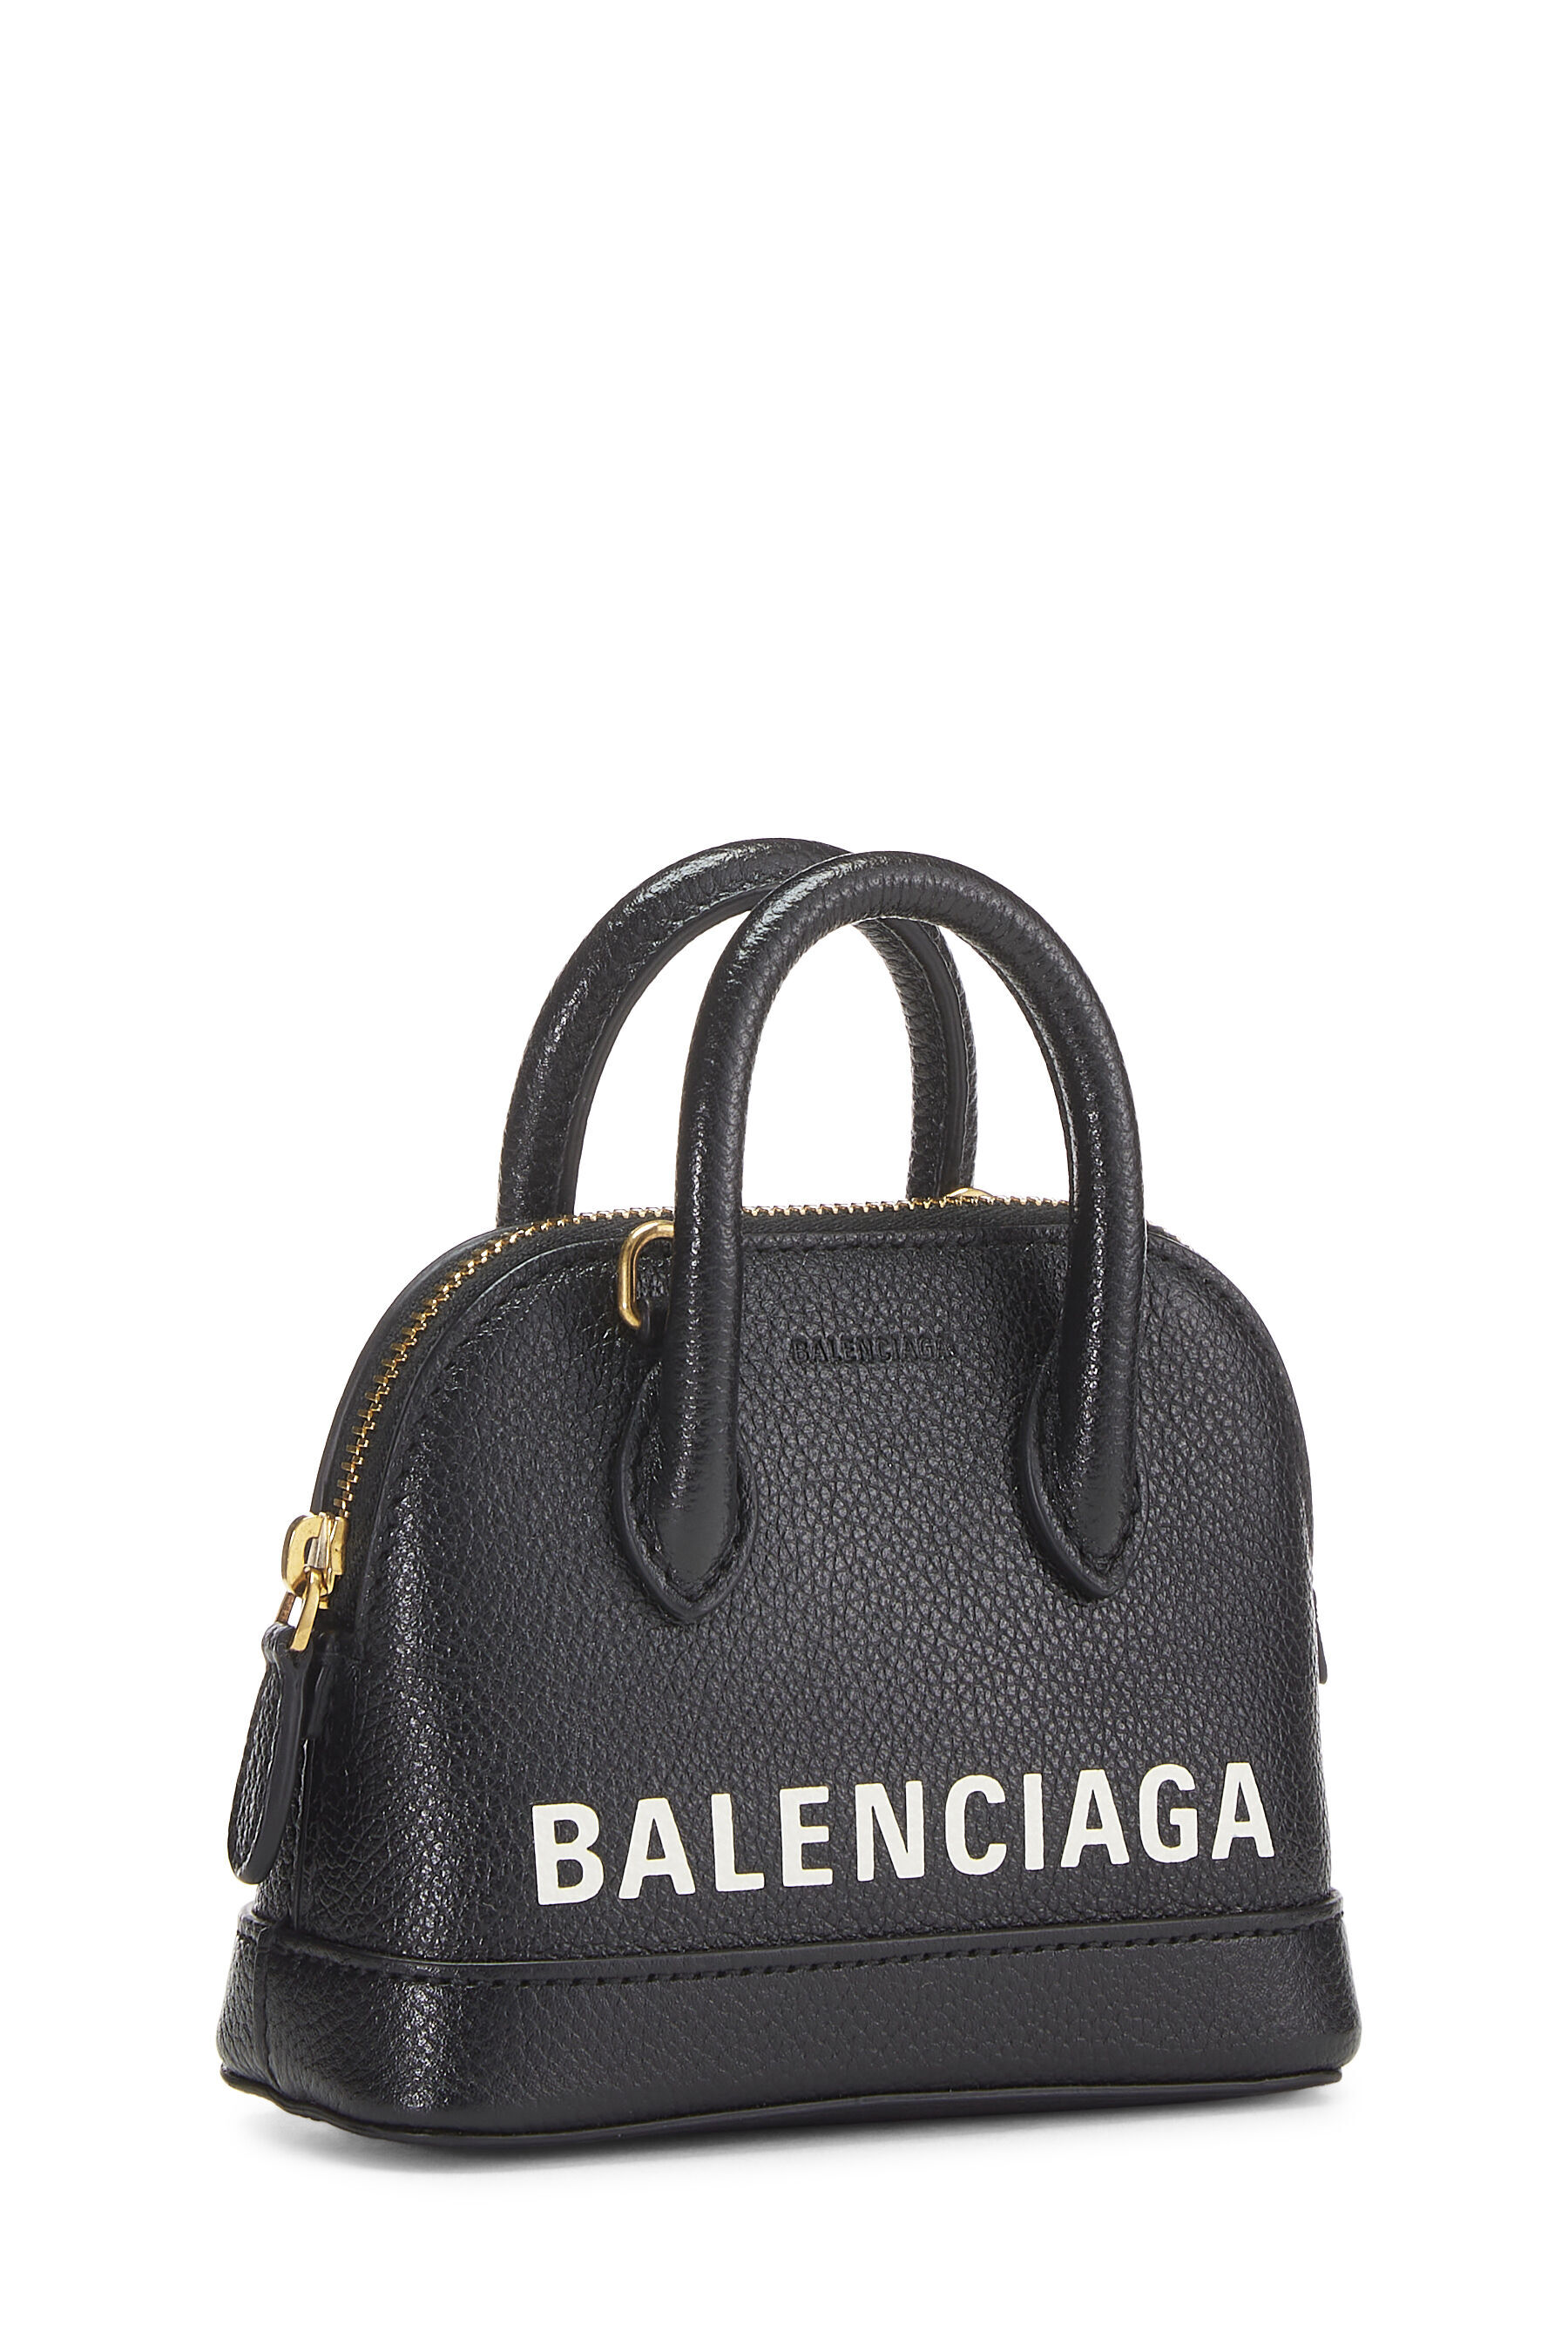 Balenciaga Black Calfskin Logo Ville Top Handle Bag Mini 